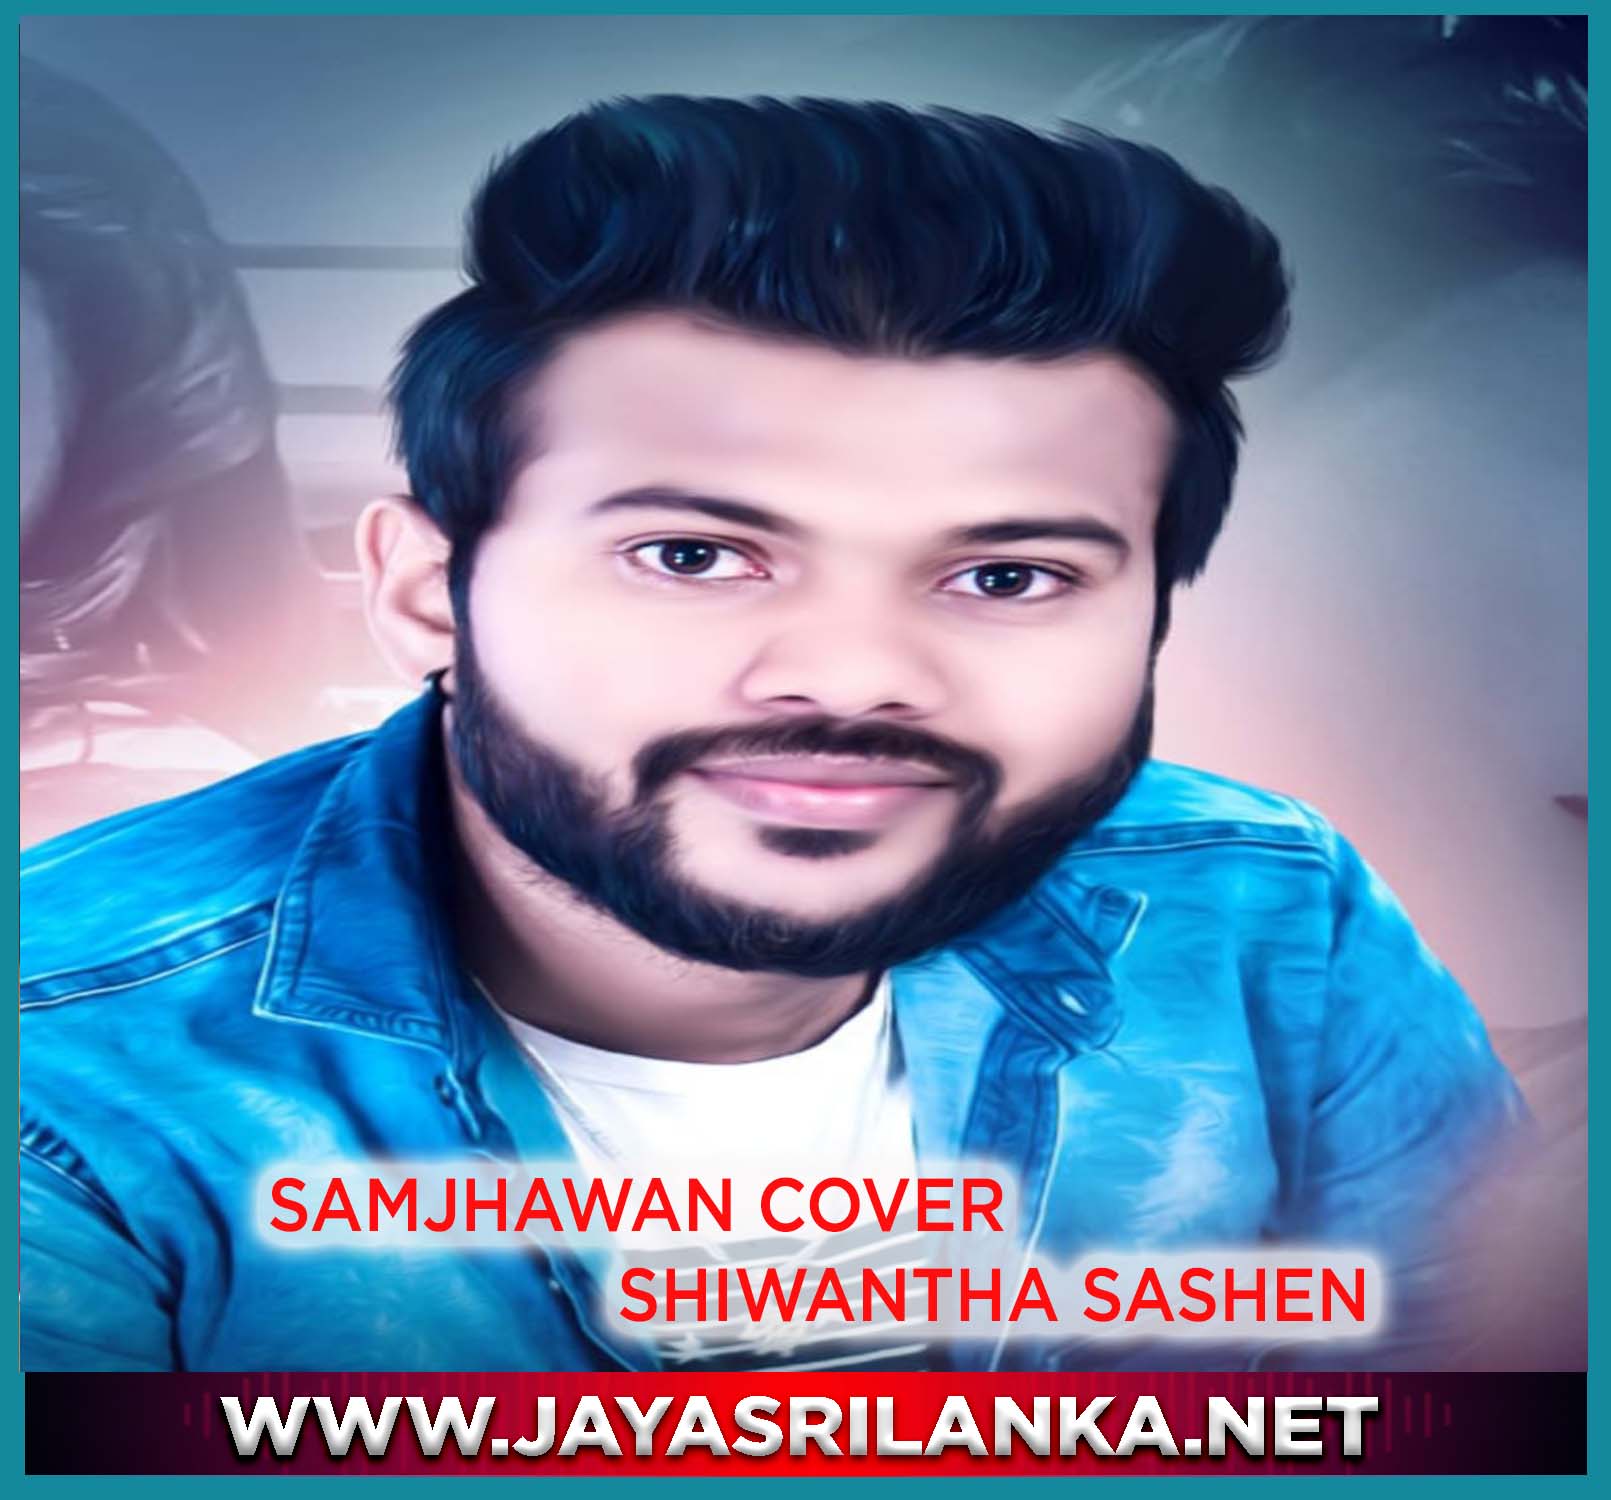 Samjhawan Cover